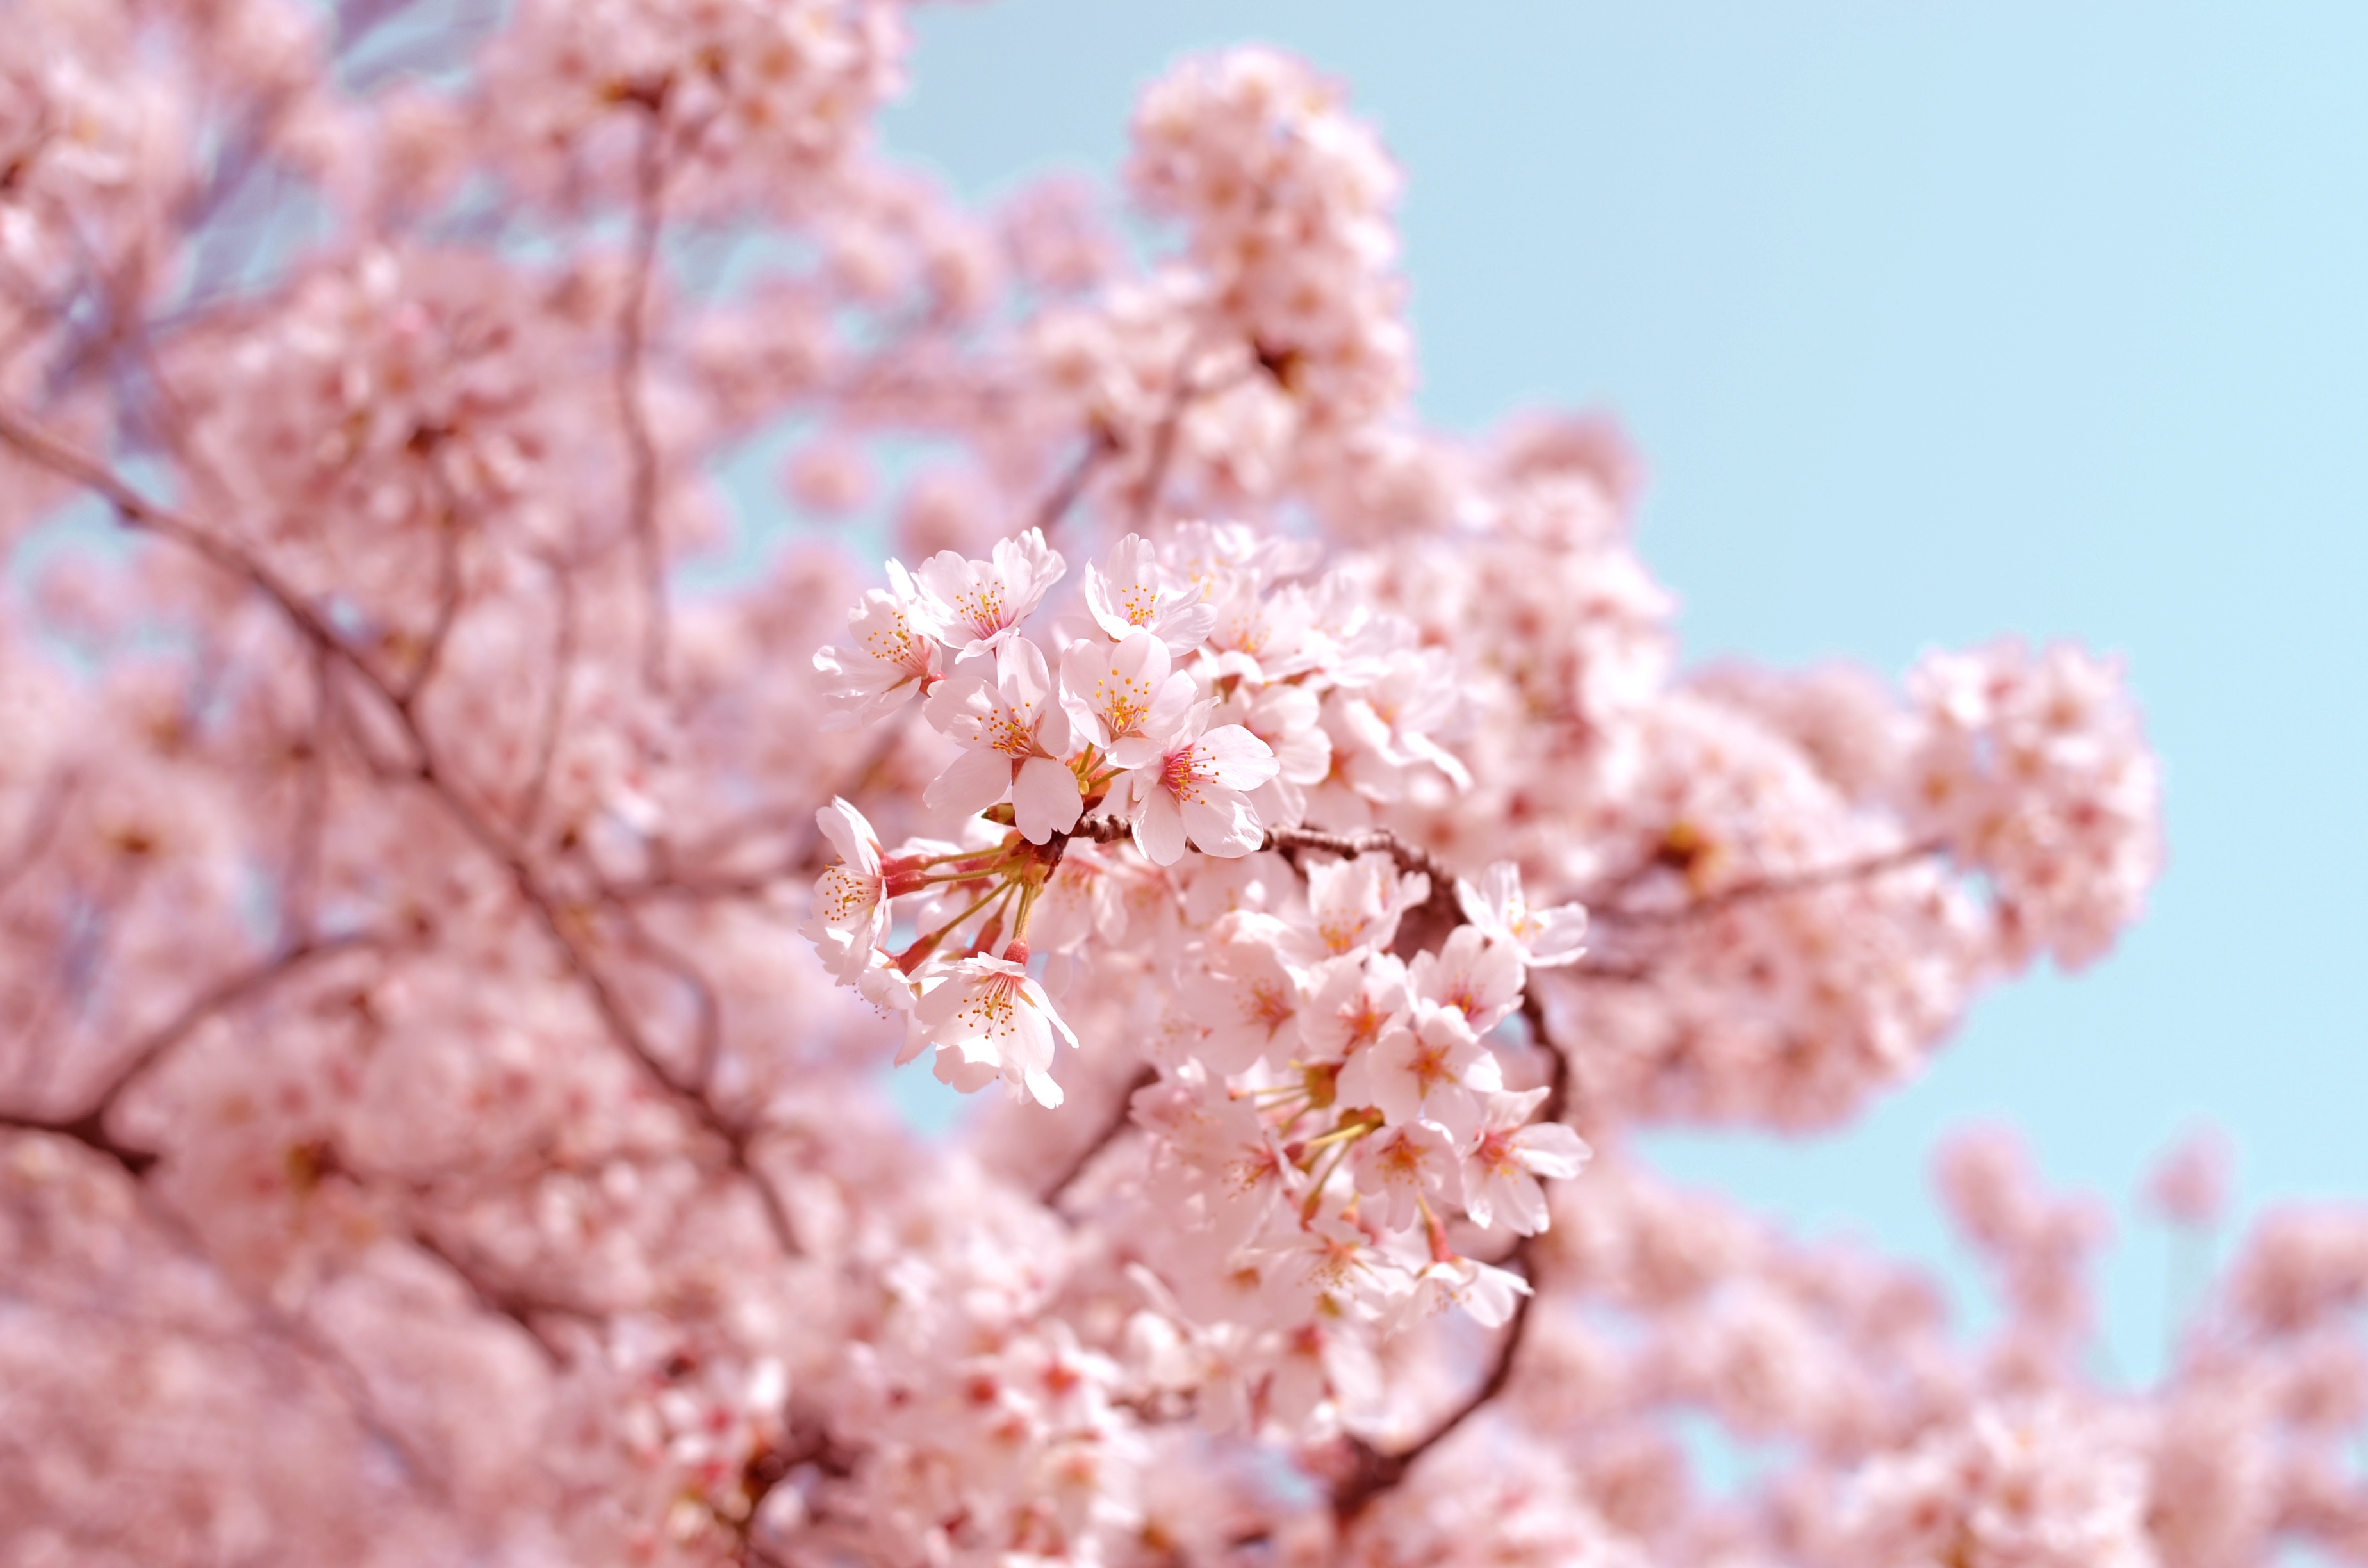 Japan's Cherry Blossom Economy | EYE ON ASIA